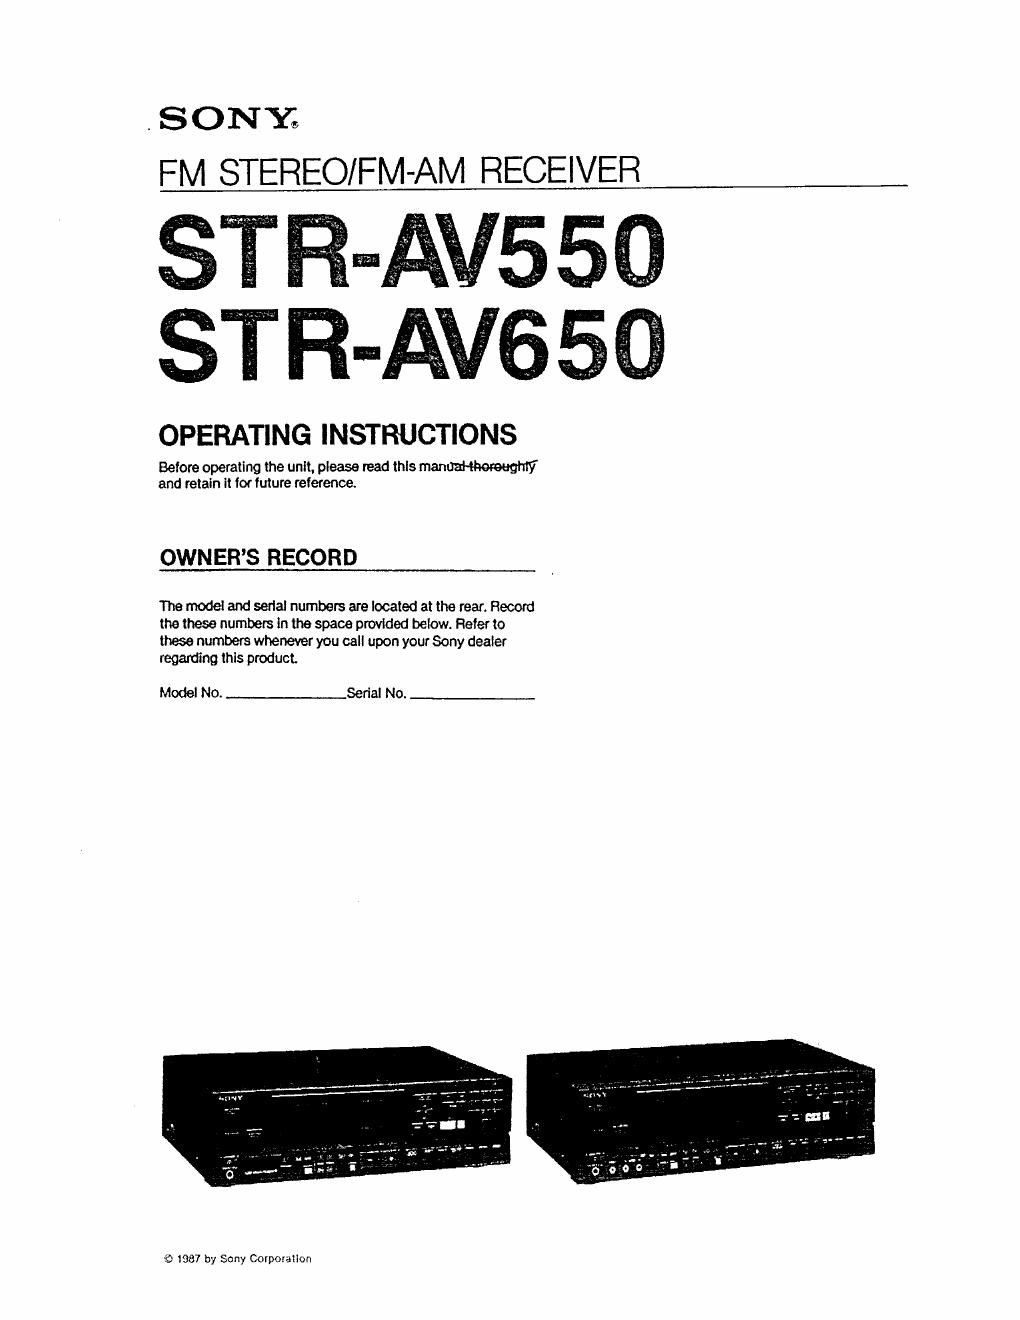 Sony STR av 650 Owners Manual